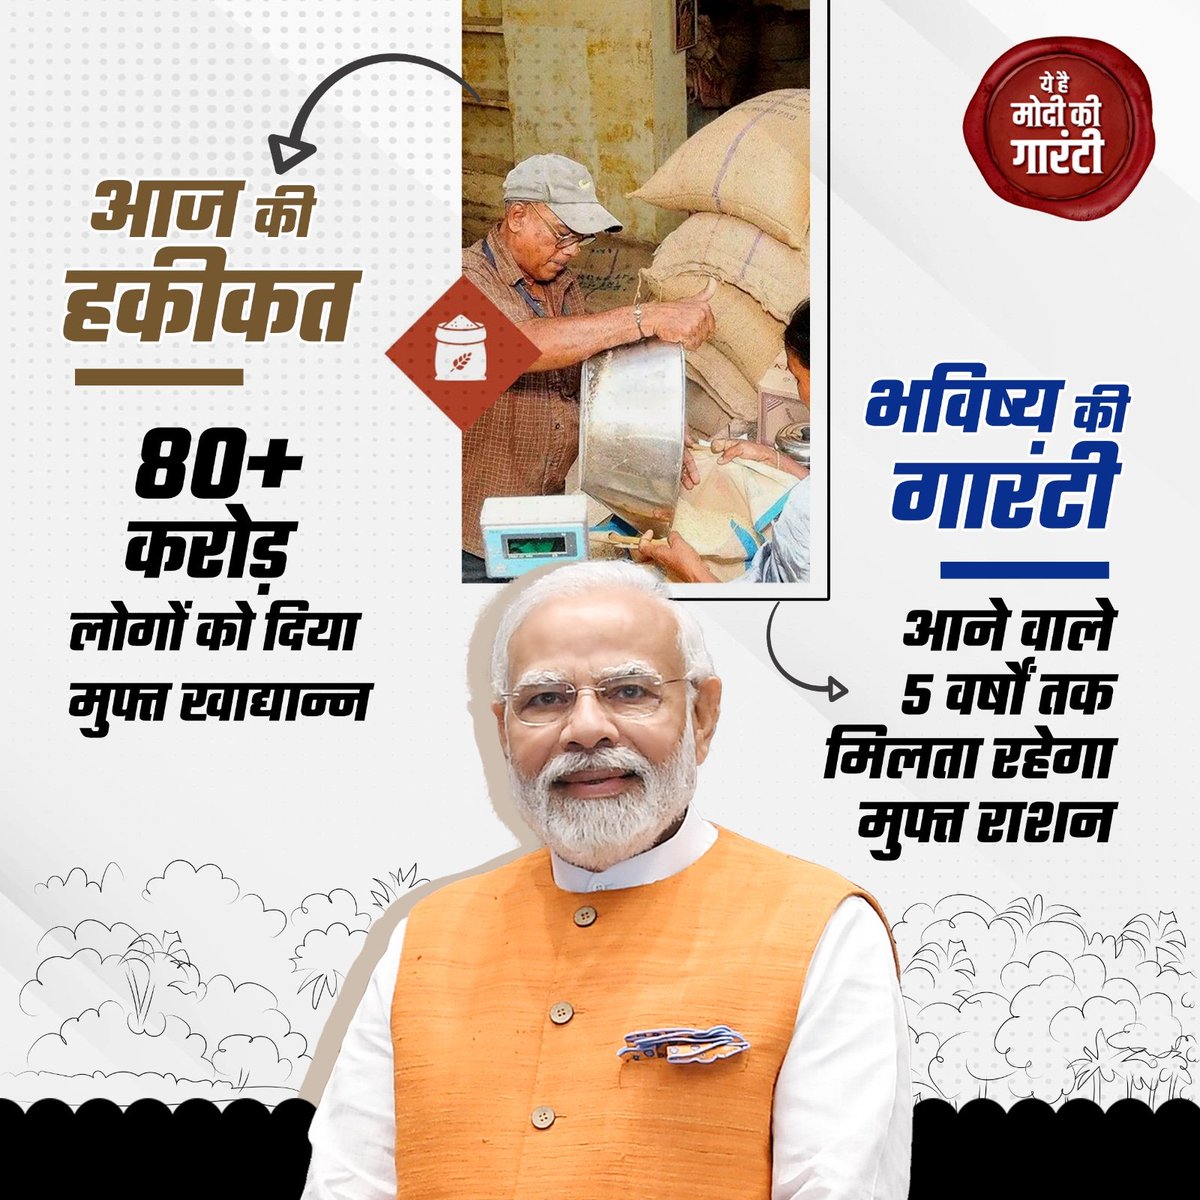 प्रधानमंत्री गरीब कल्याण अन्न योजना के तहत लाभार्थियों को आने वाले 5 वर्षों तक मिलता रहेगा मुफ्त अनाज। ये है #ModiKiGuarantee #PhirEkBaarModiSarkar